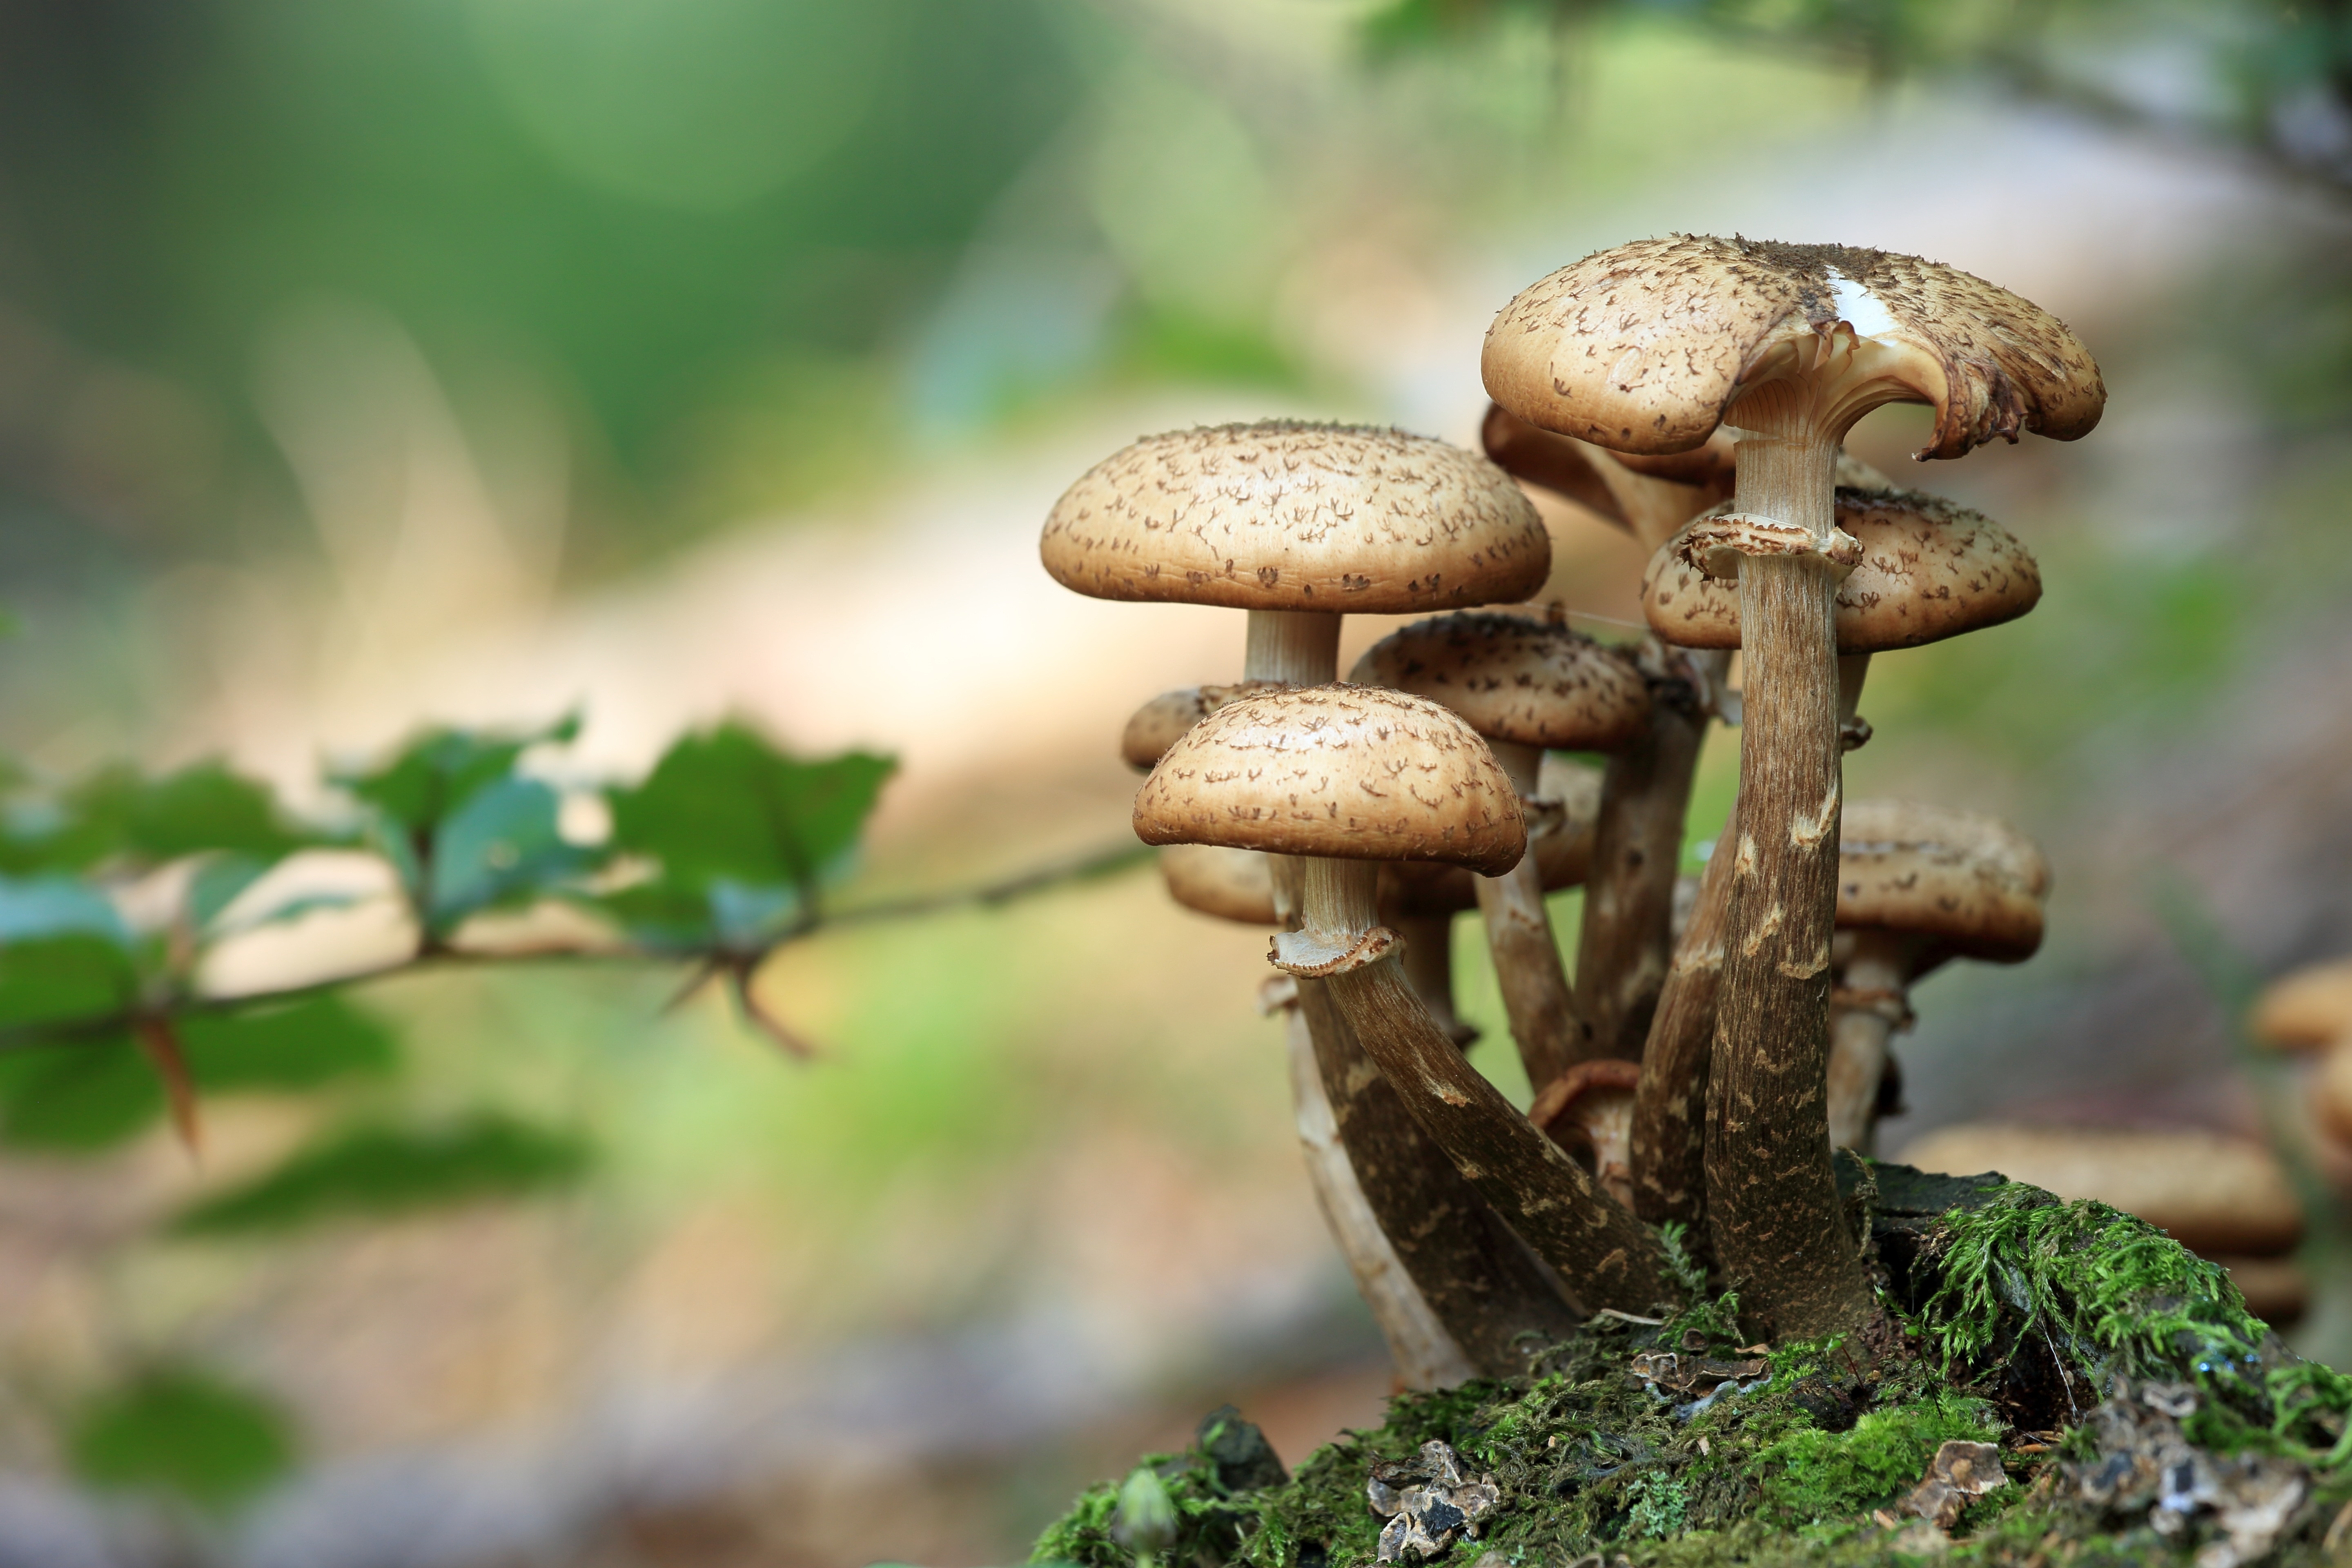 brown mushroom during daytime